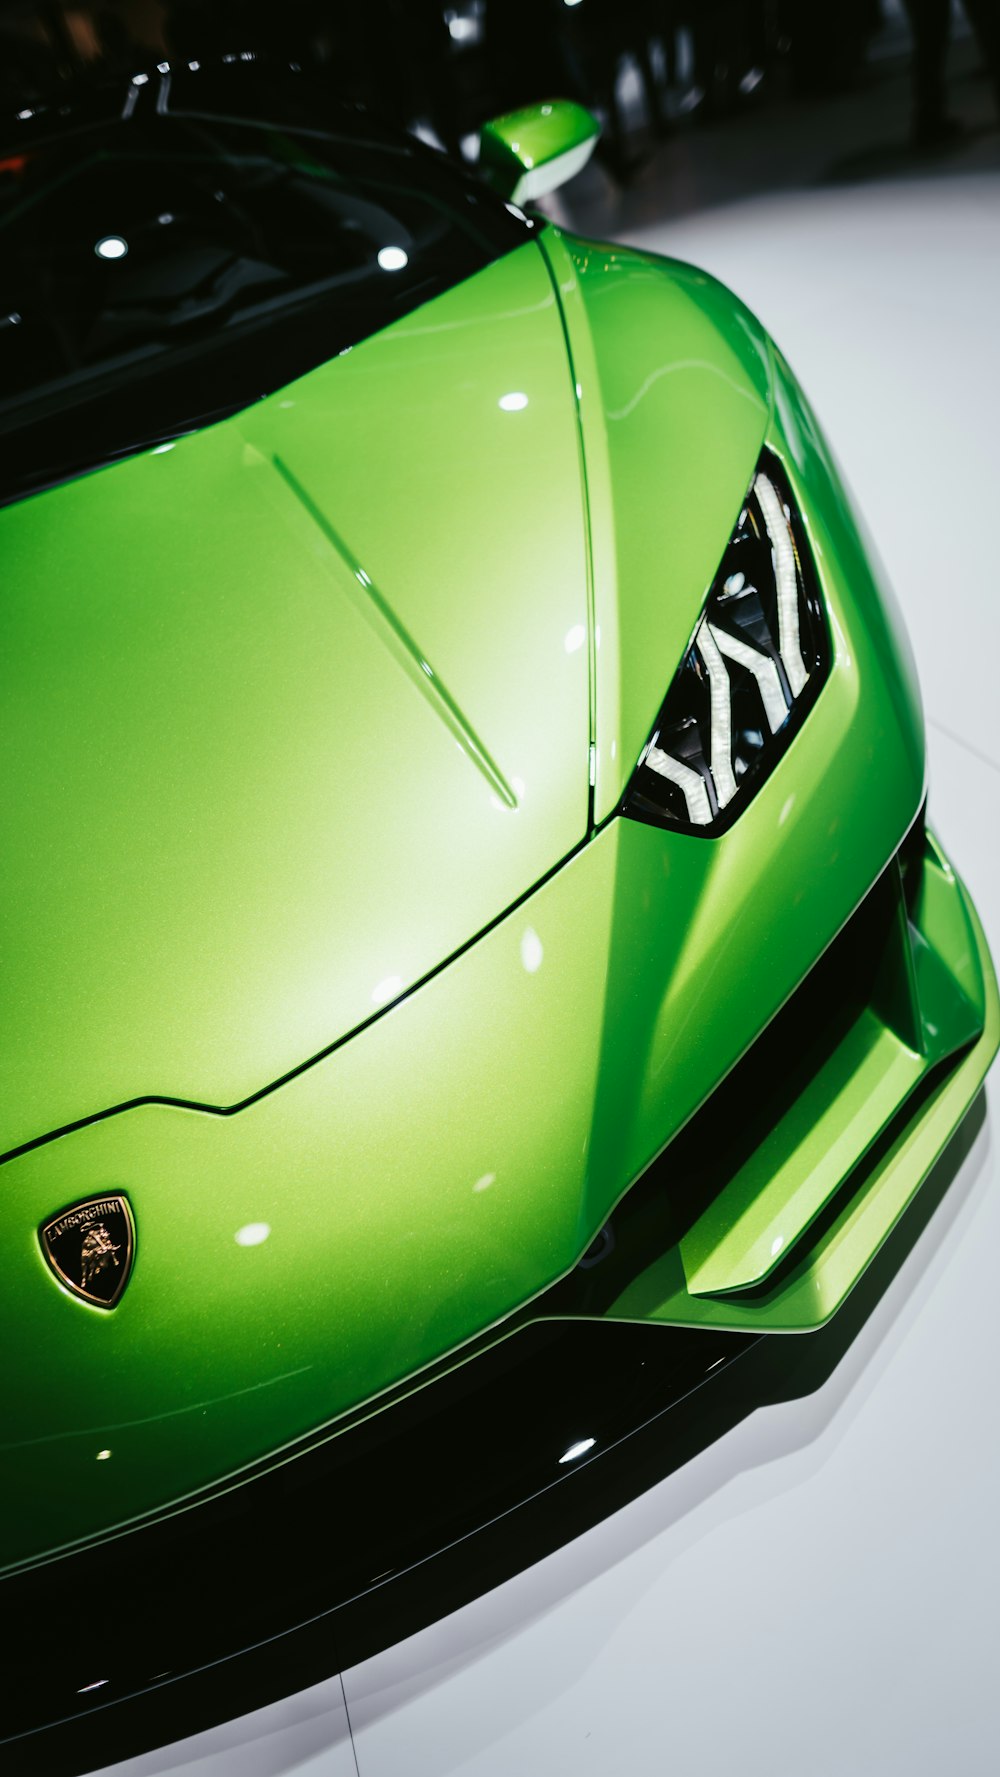 Une voiture de sport verte